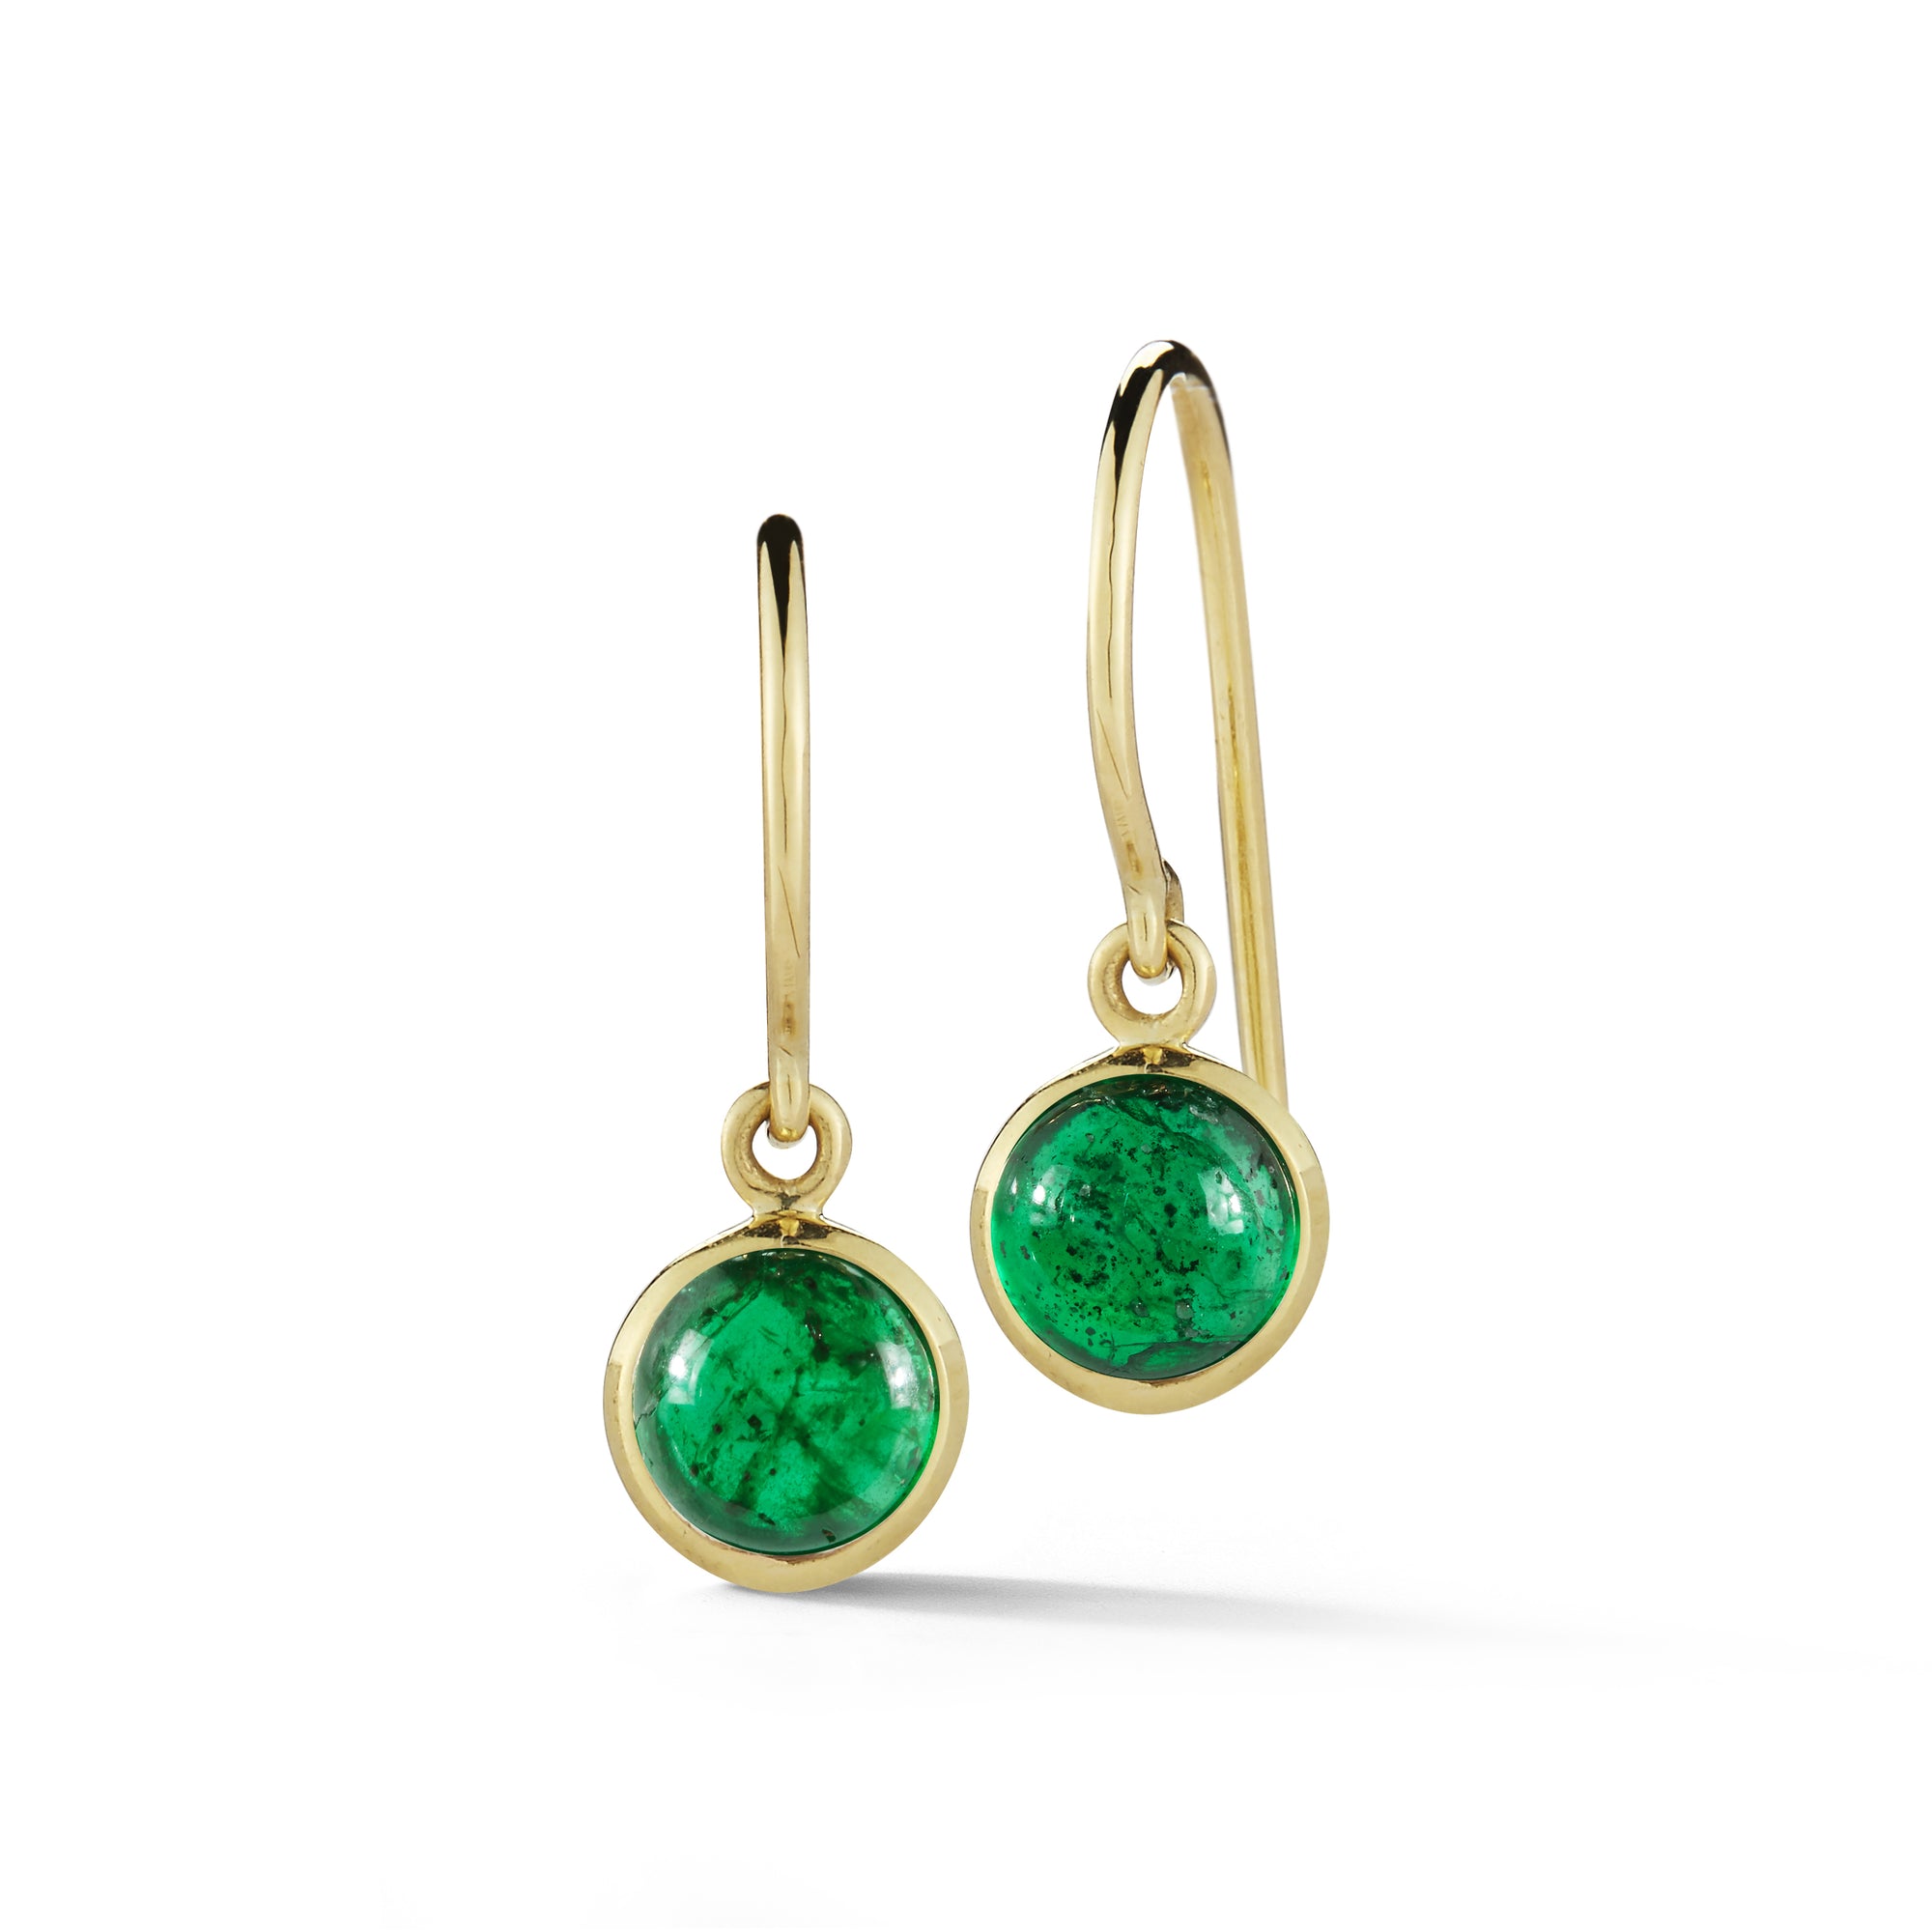 18k gold simple emerald workplace earrings by finn by candice pool neistat